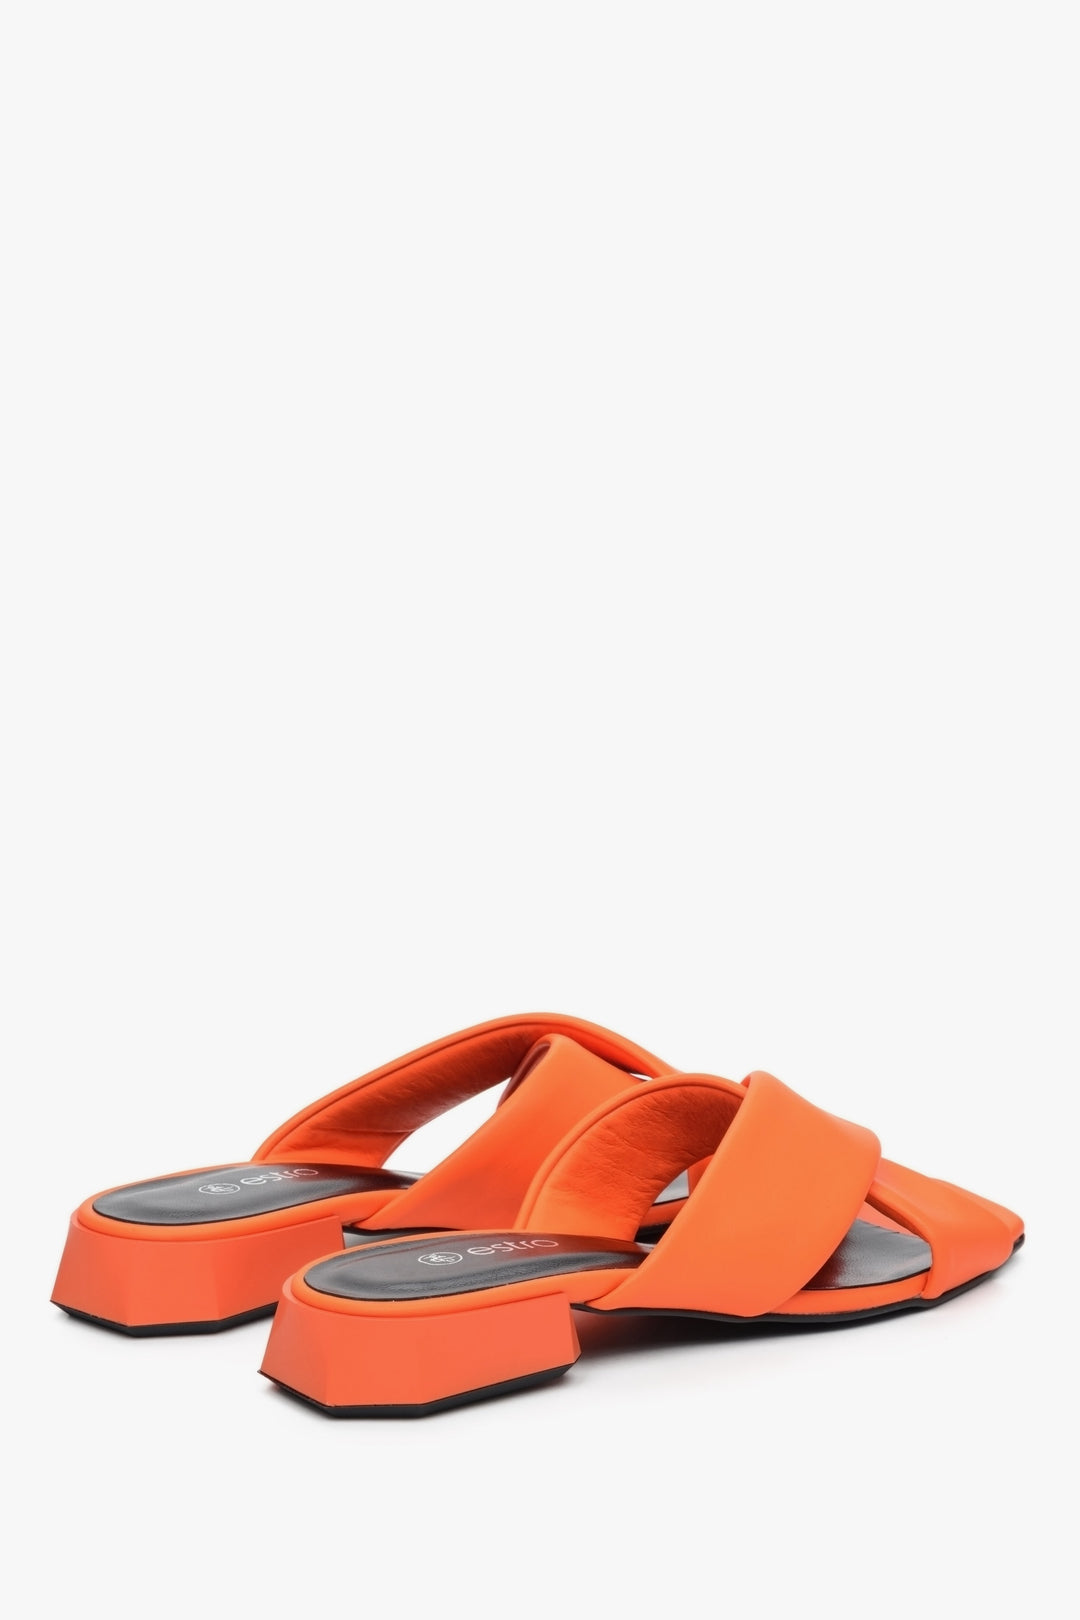 Damskie klapki skórzane na niskim obcasie w kolorze pomarańczowym - zbliżenie na tył buta.